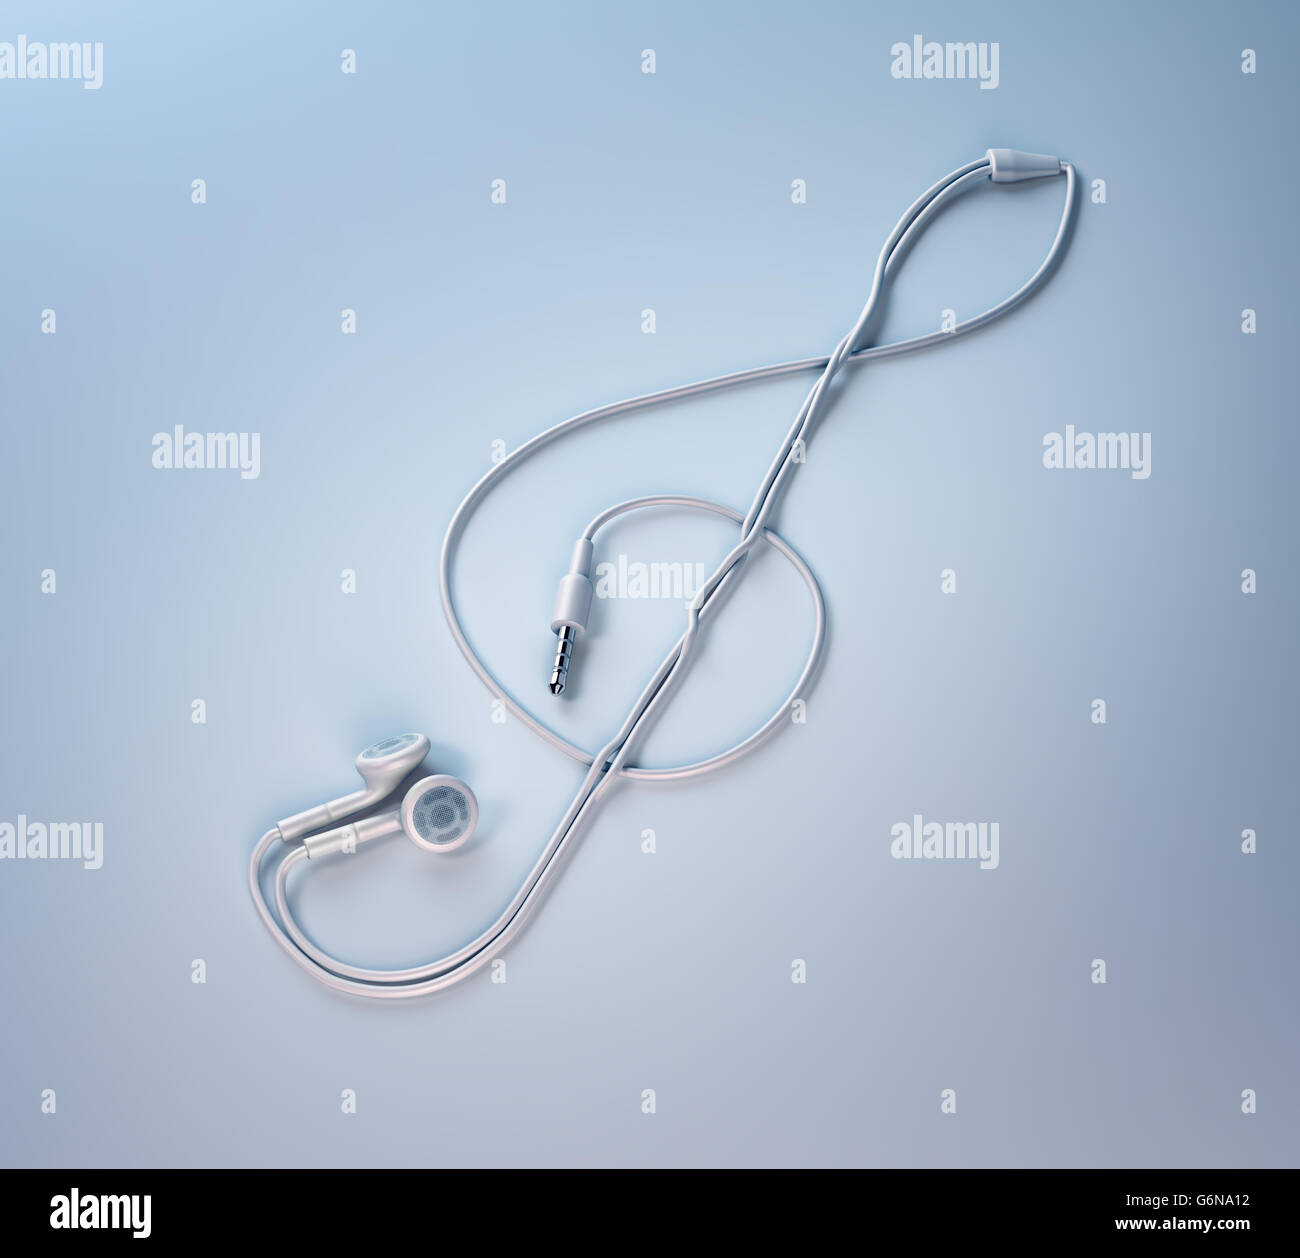 Ohrhörer bilden eine musikalische Notenschlüssel Form - 3D-Illustration Stockfoto